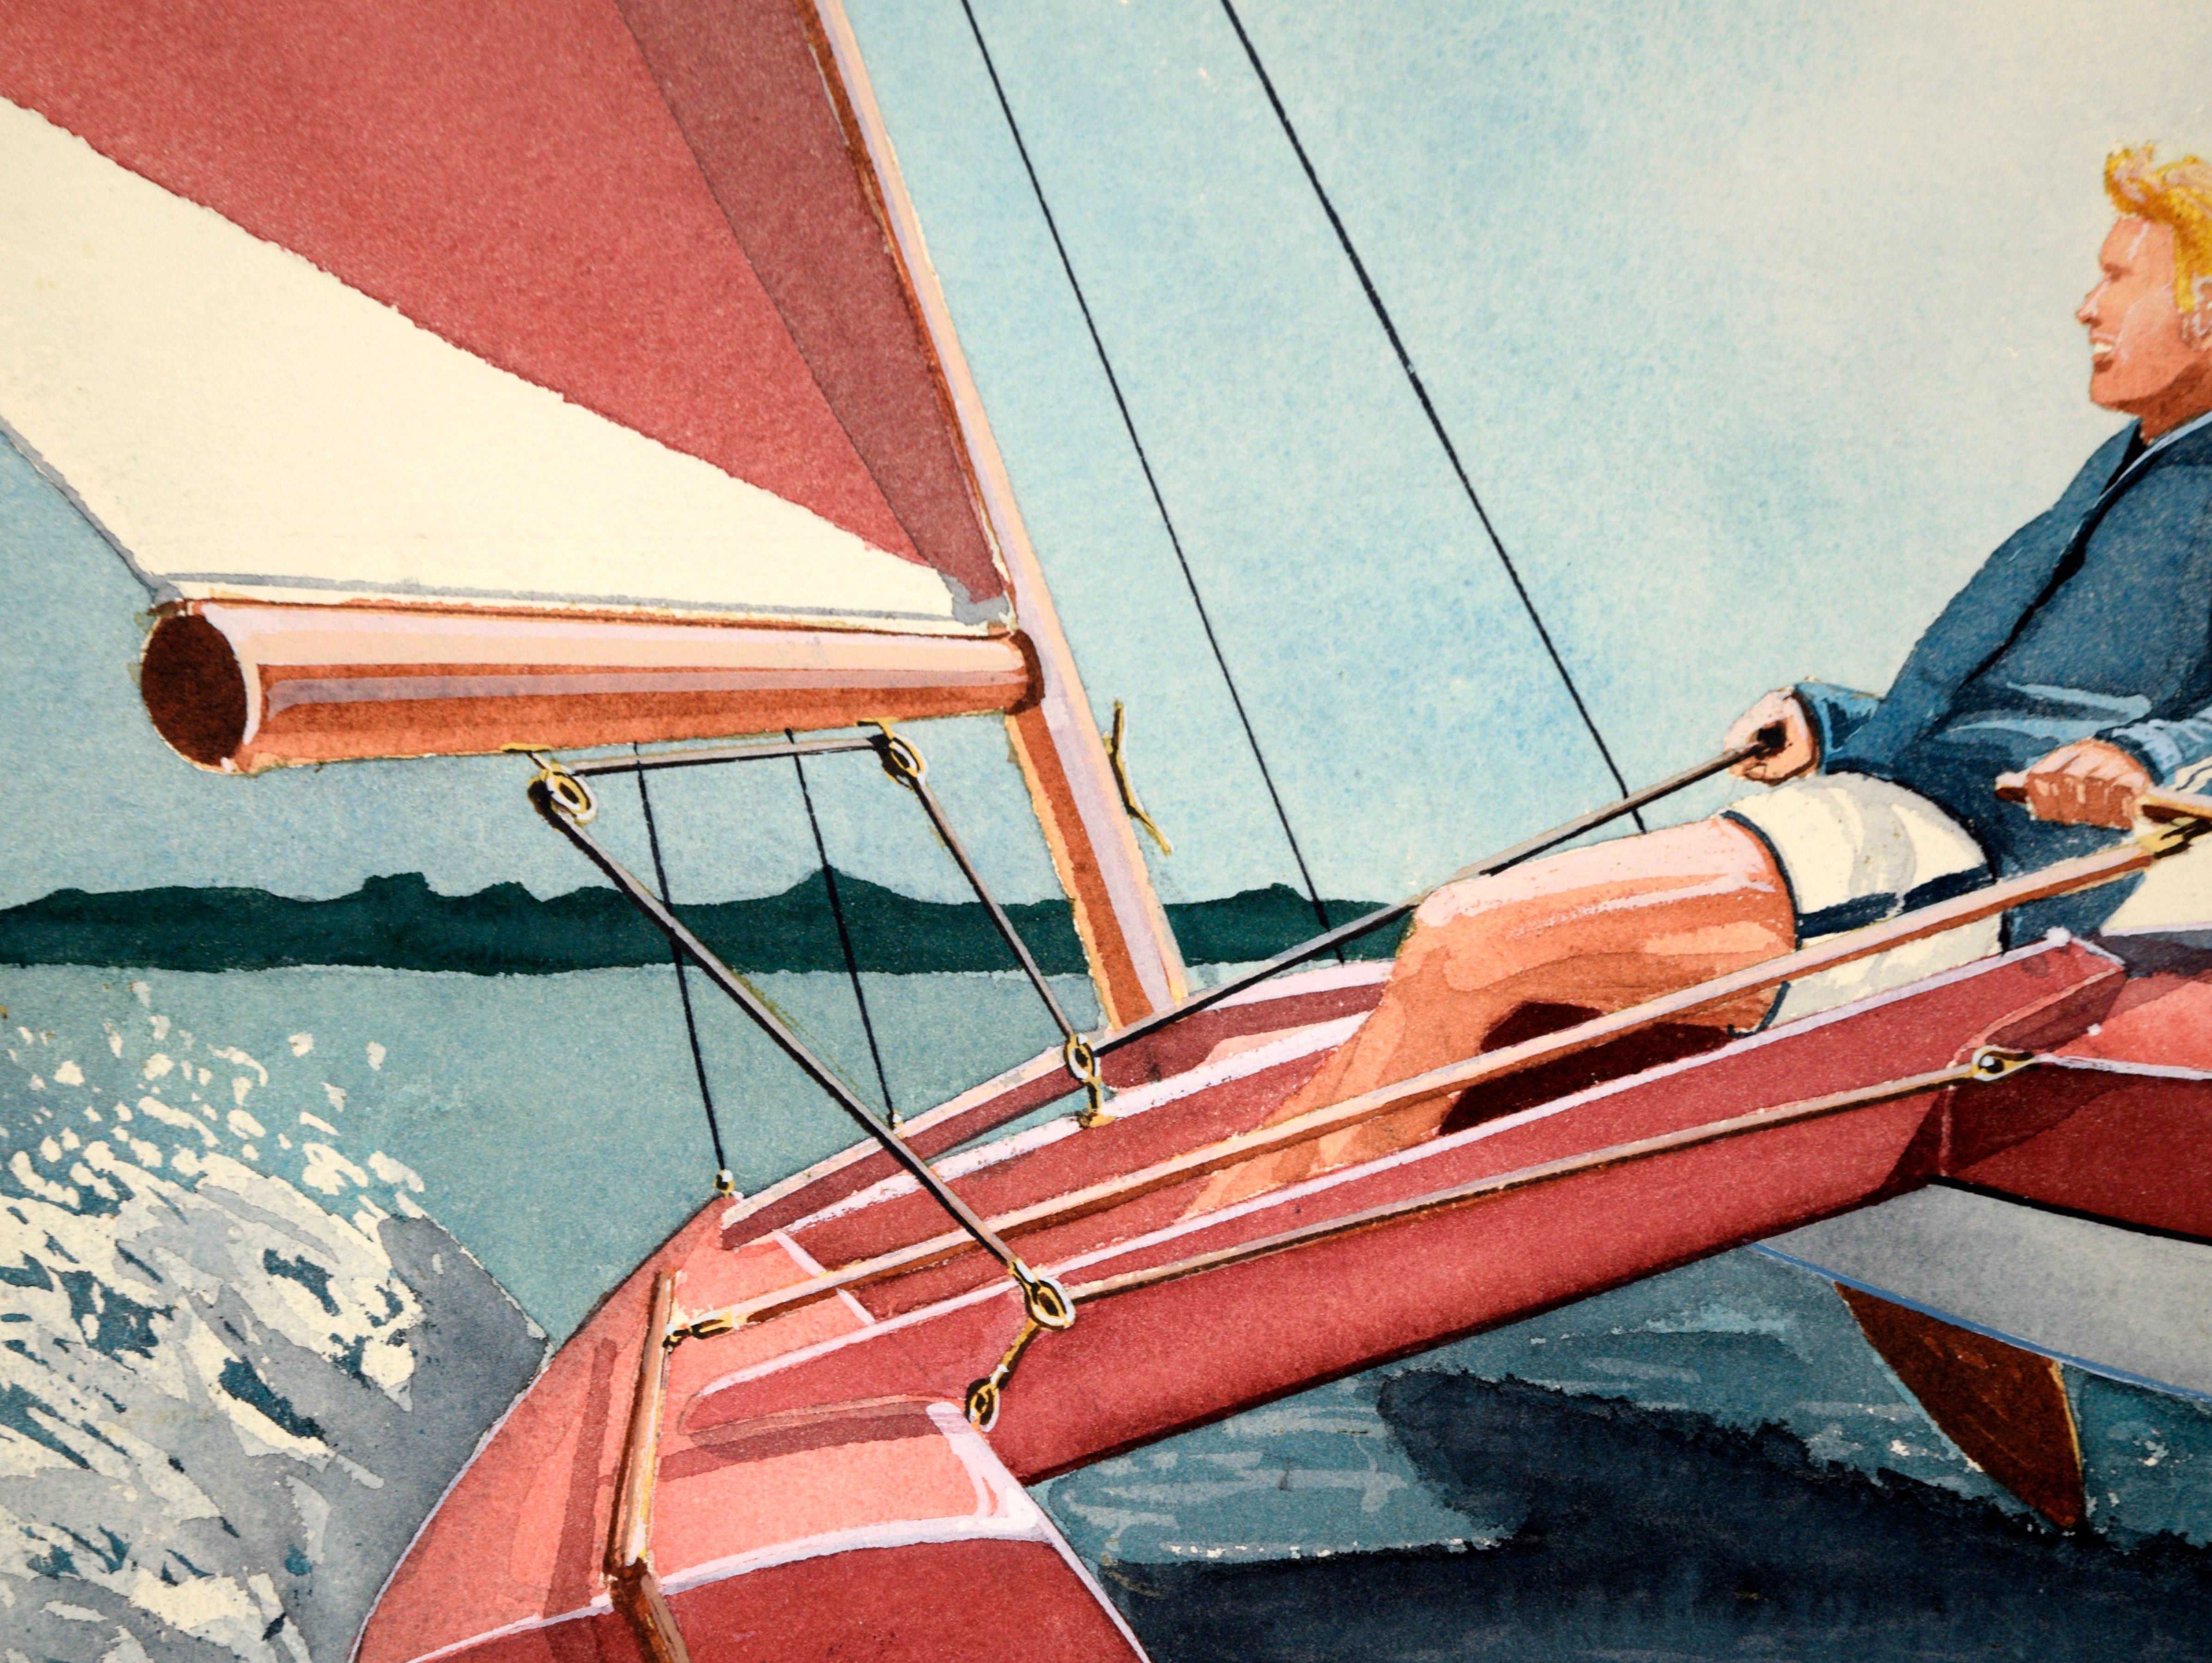 Solorennen auf einem Katamaran – Abenteuer-Illustration in Aquarell und Tinte auf Papier (Beige), Landscape Art, von Edward T. Liljenwall